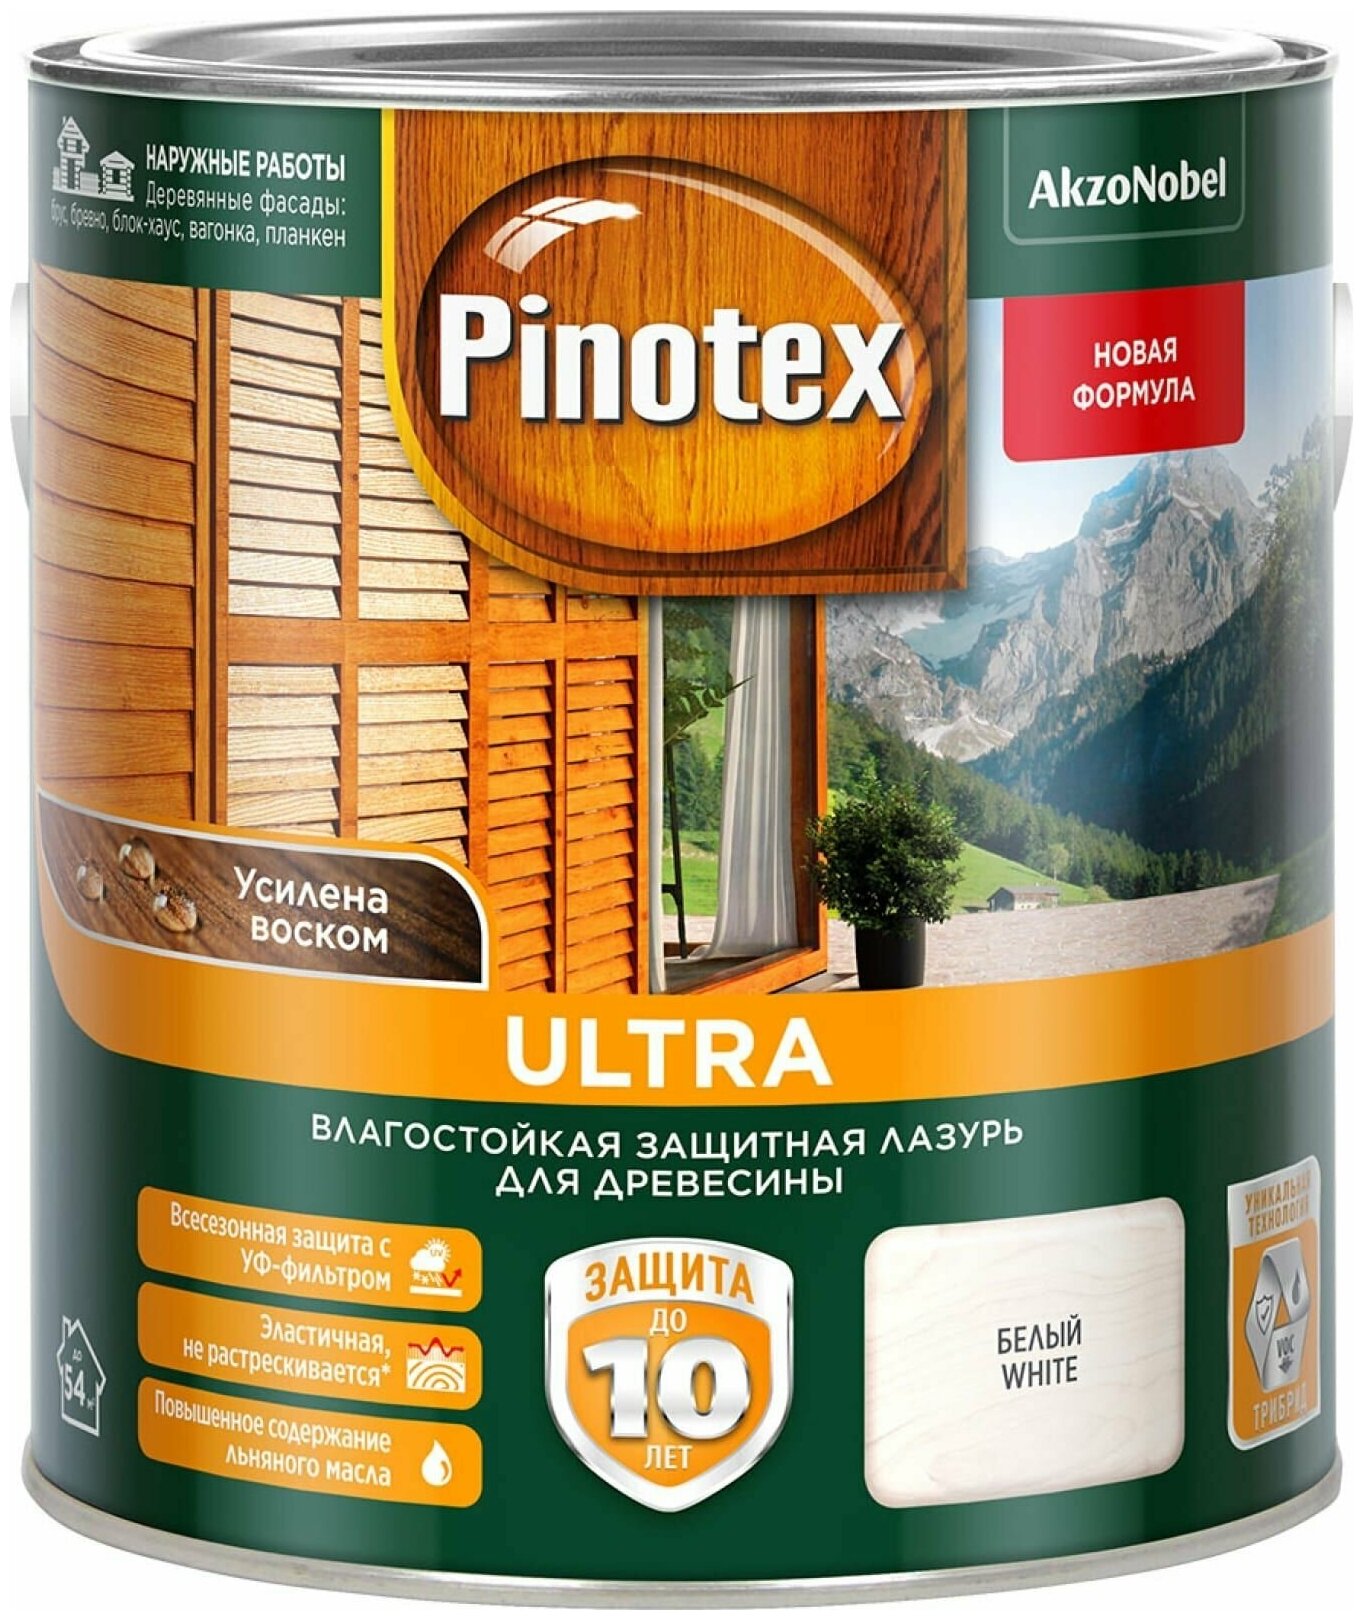      Pinotex Ultra AWB   2,7 .